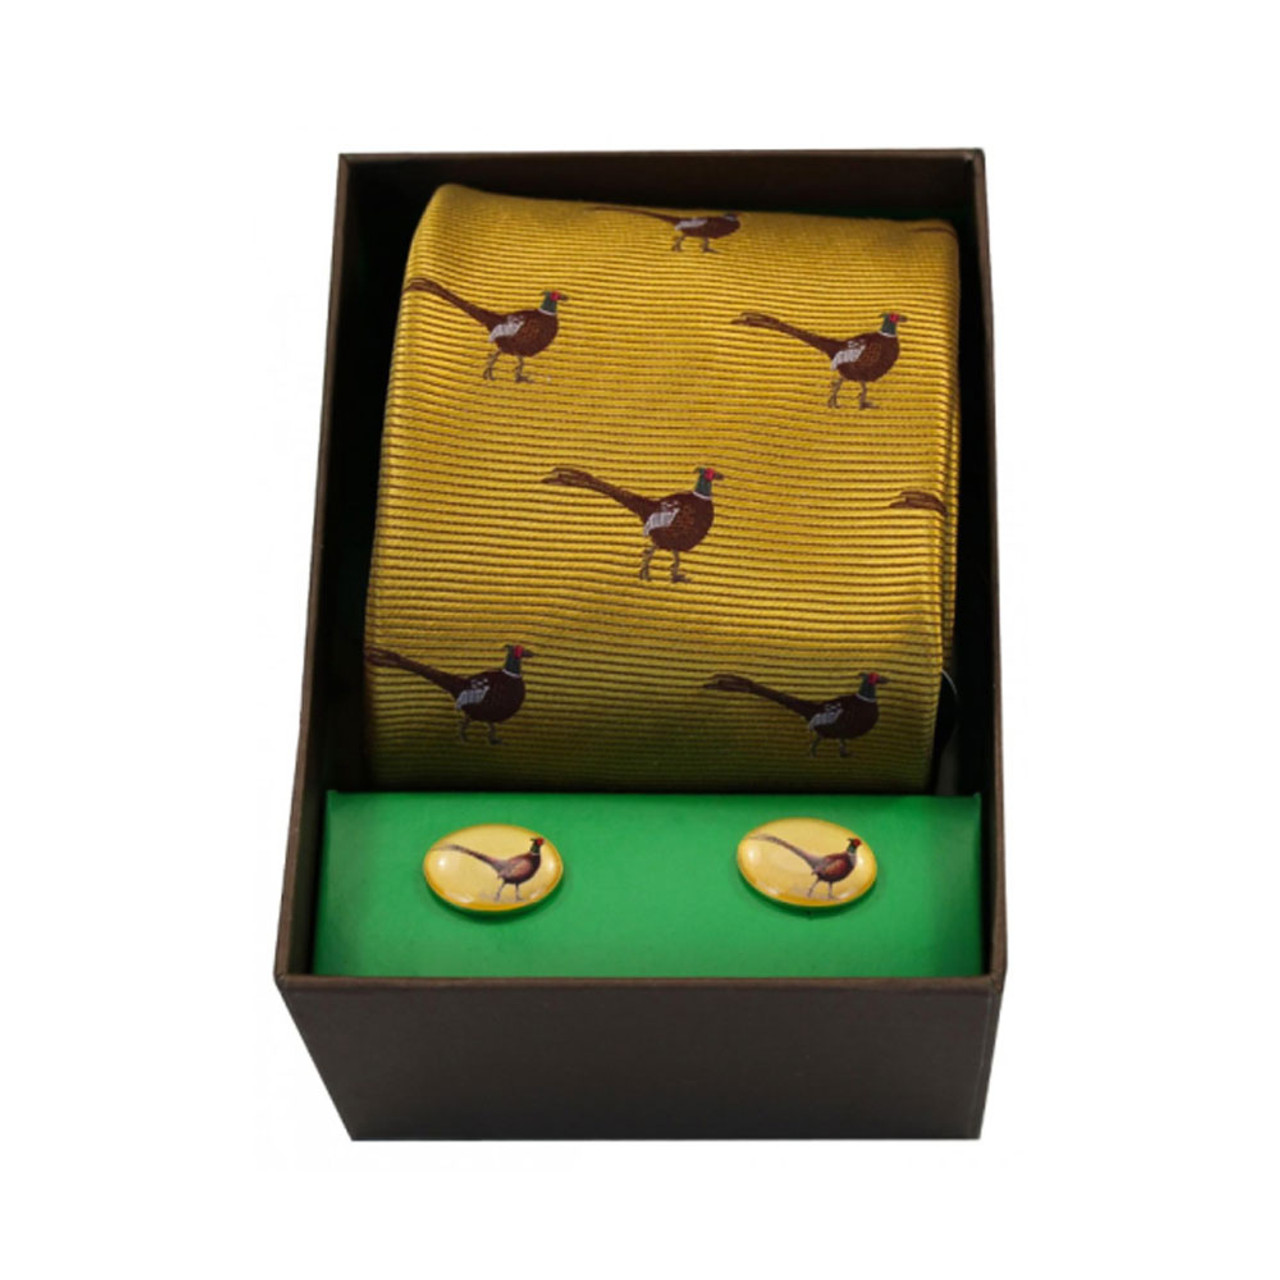 Silk tie and cufflinks gift set in Gold